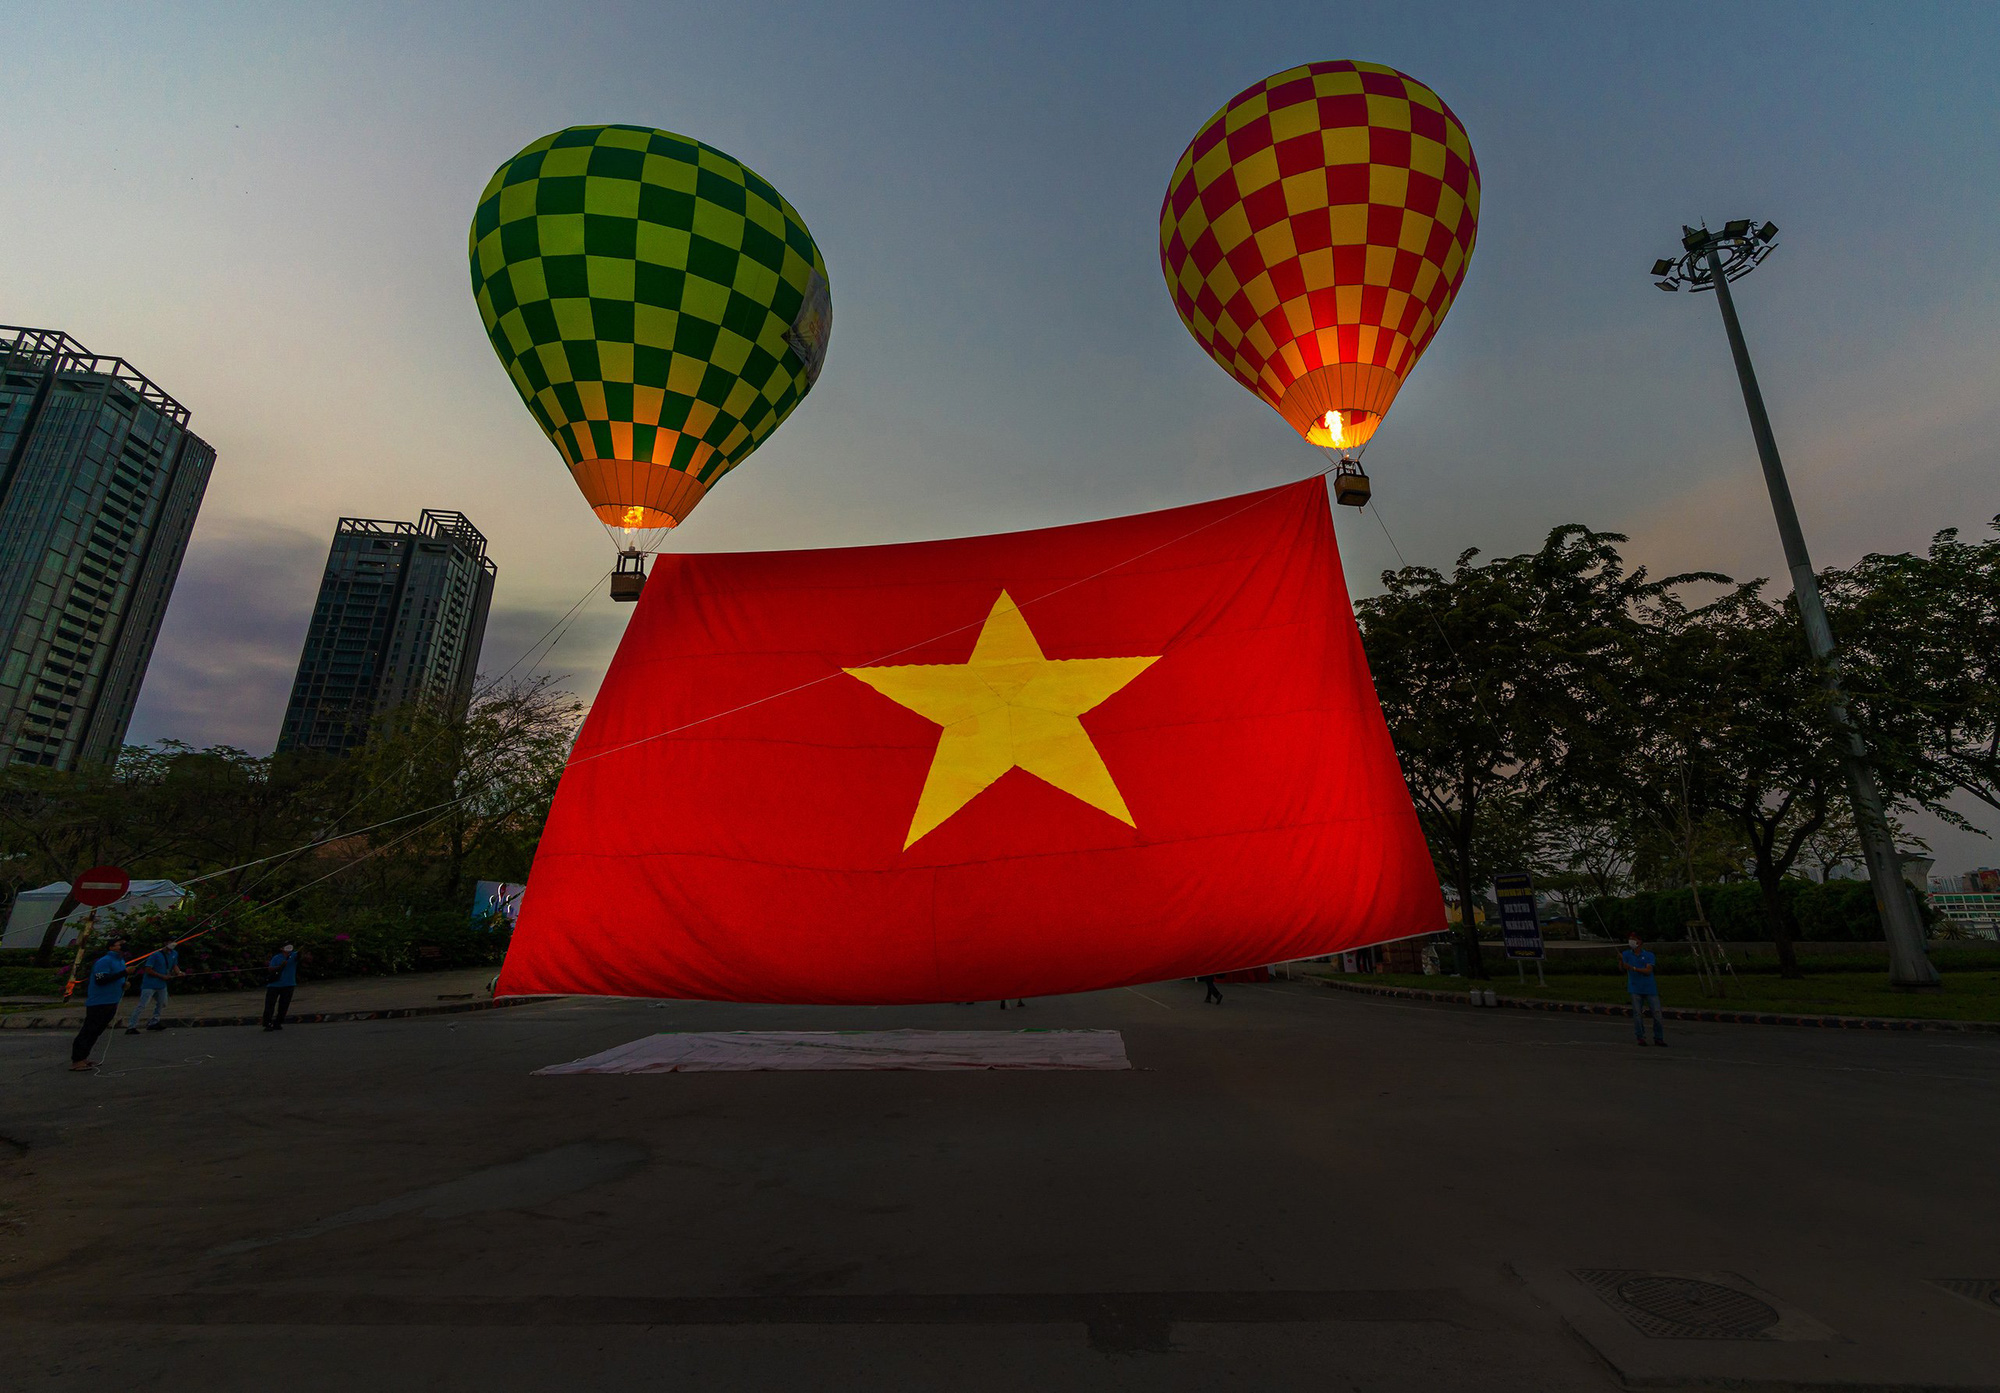 Thiêng liêng cờ Tổ quốc - Cờ Tổ quốc là biểu tượng linh thiêng của dân tộc Việt Nam, nó truyền tải những giá trị về tình yêu đất nước và lòng tự hào dân tộc. Hãy cùng ngắm nhìn hình ảnh thiêng liêng của cờ Tổ quốc để cảm nhận sự tôn vinh đất nước và niềm tự hào dân tộc!